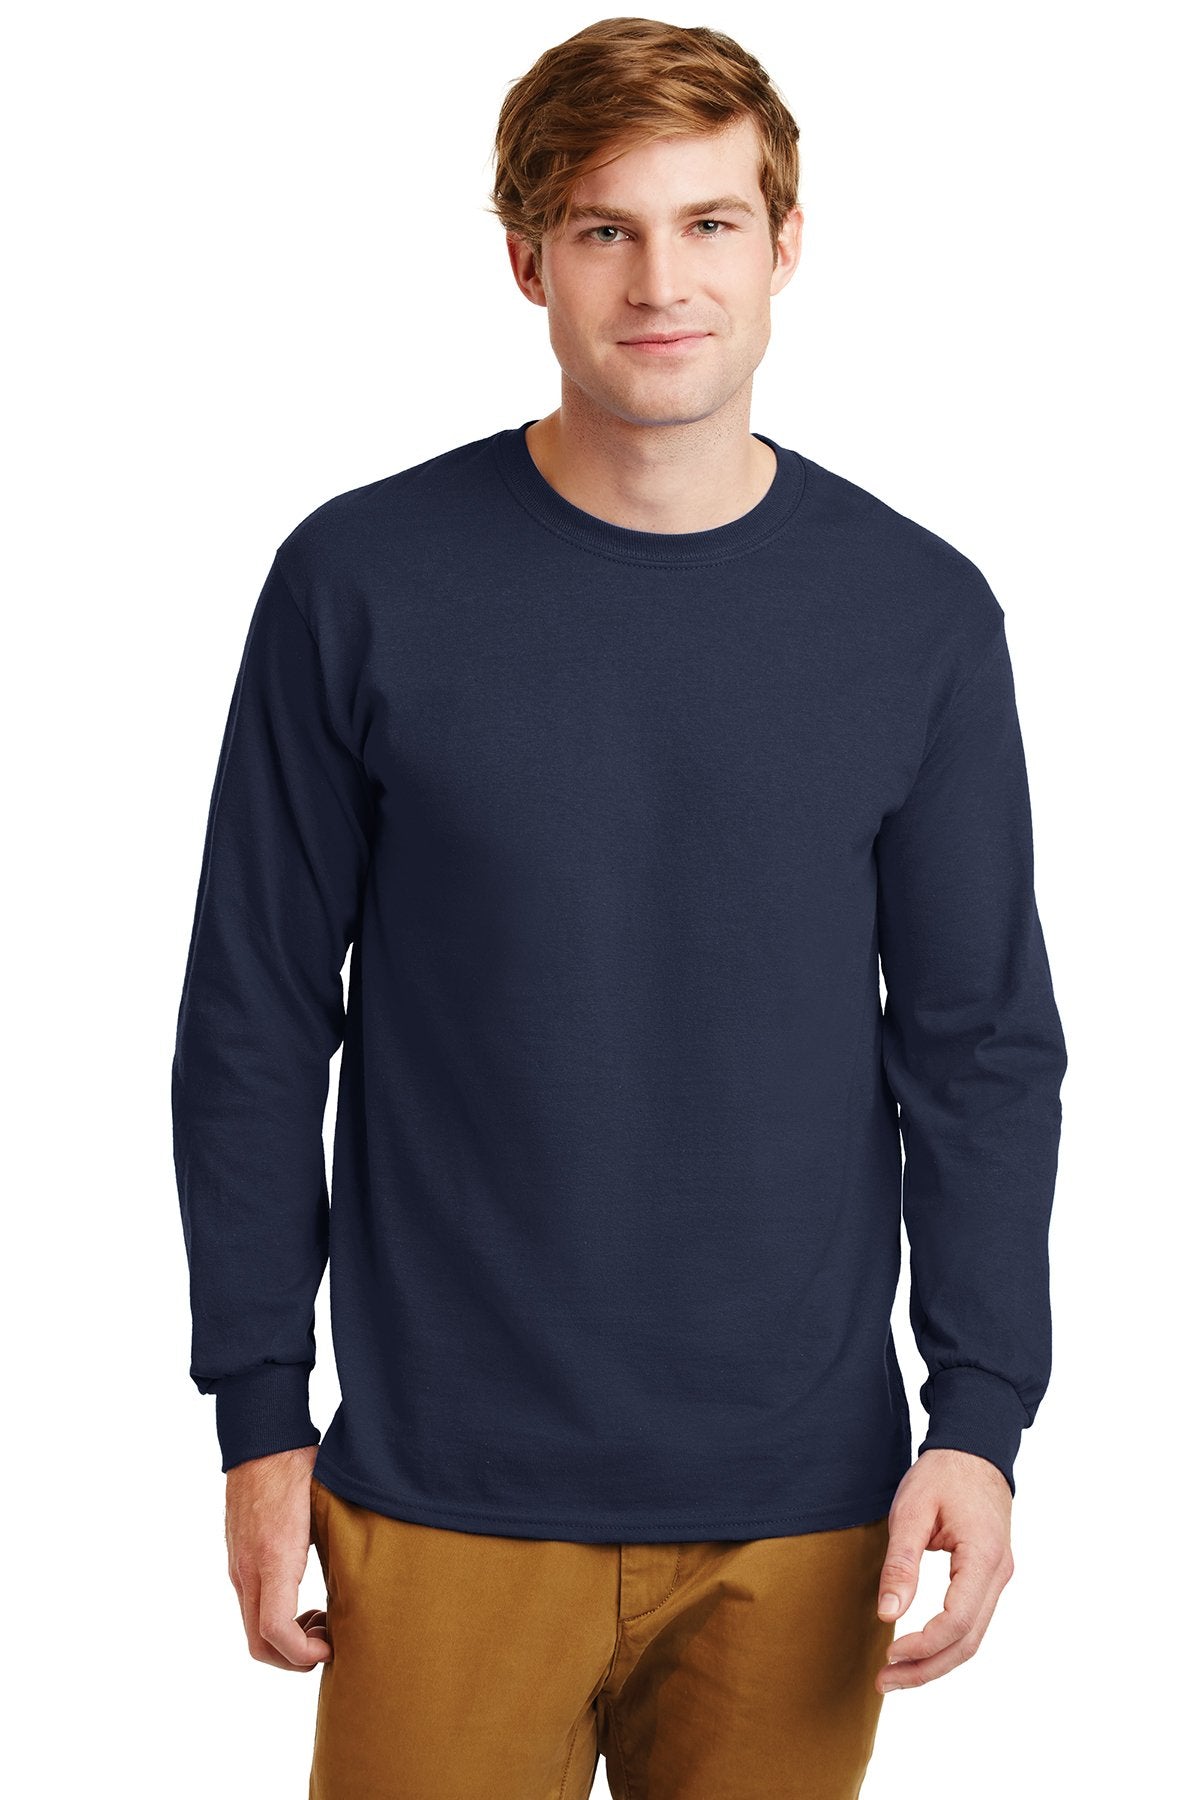 gildan ultra cotton long sleeve t shirt g2400 navy